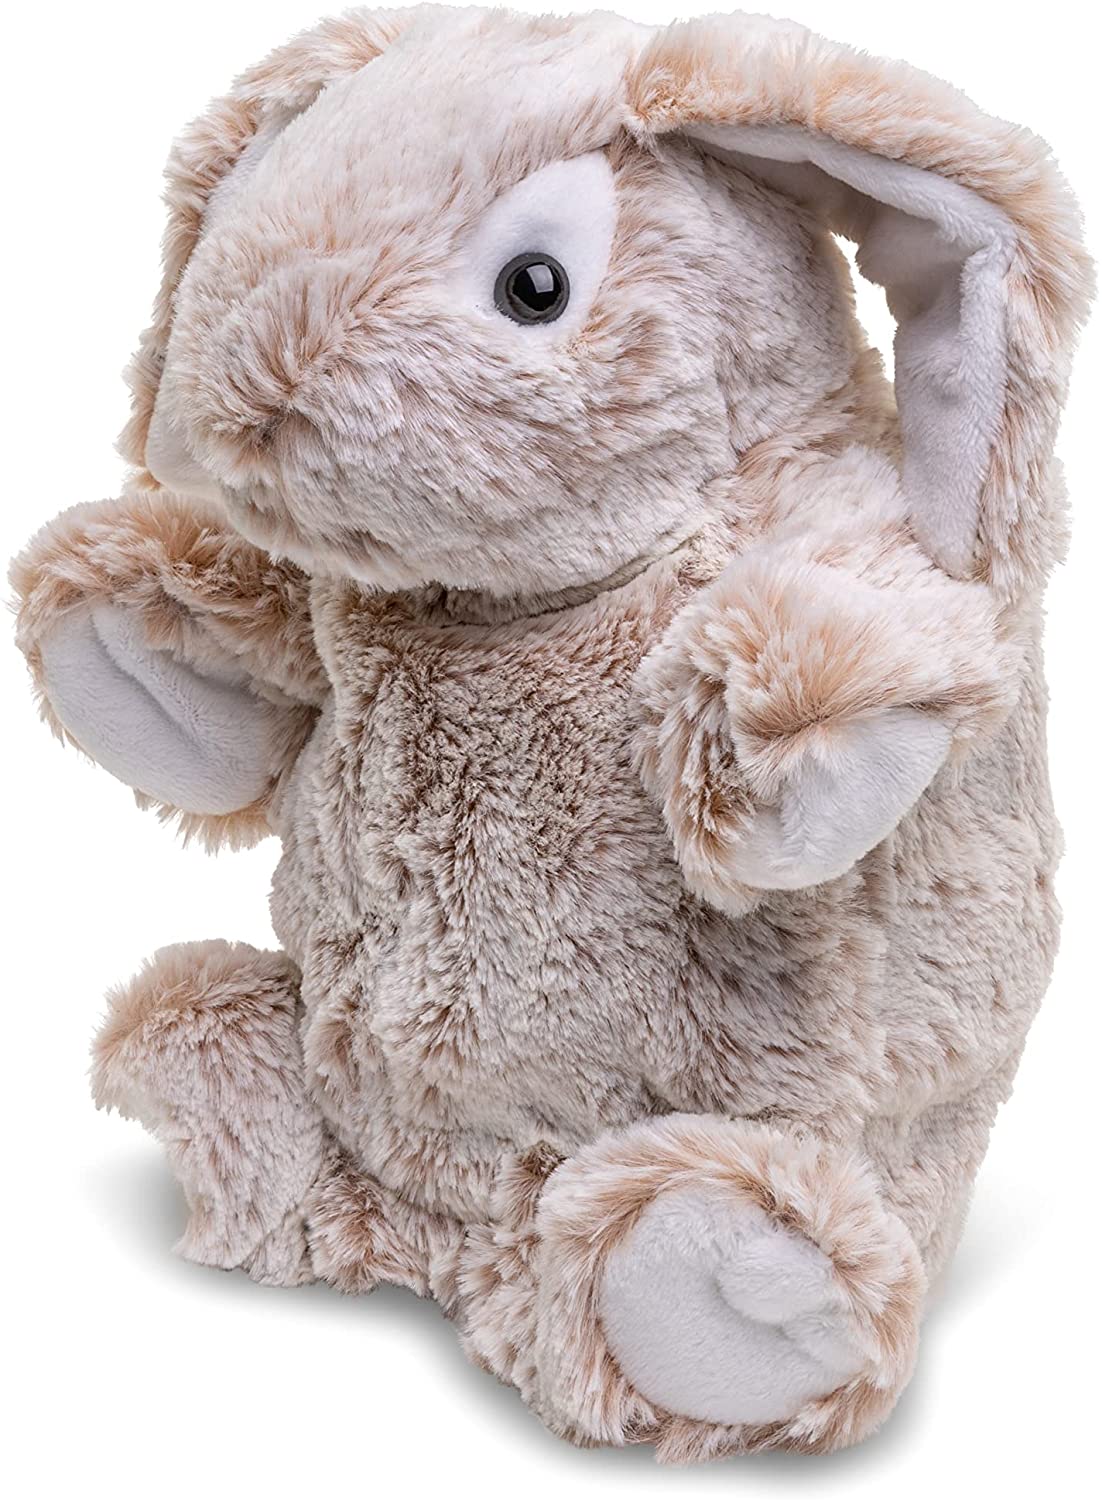  hand puppet rabbit - 24 cm (Height) 